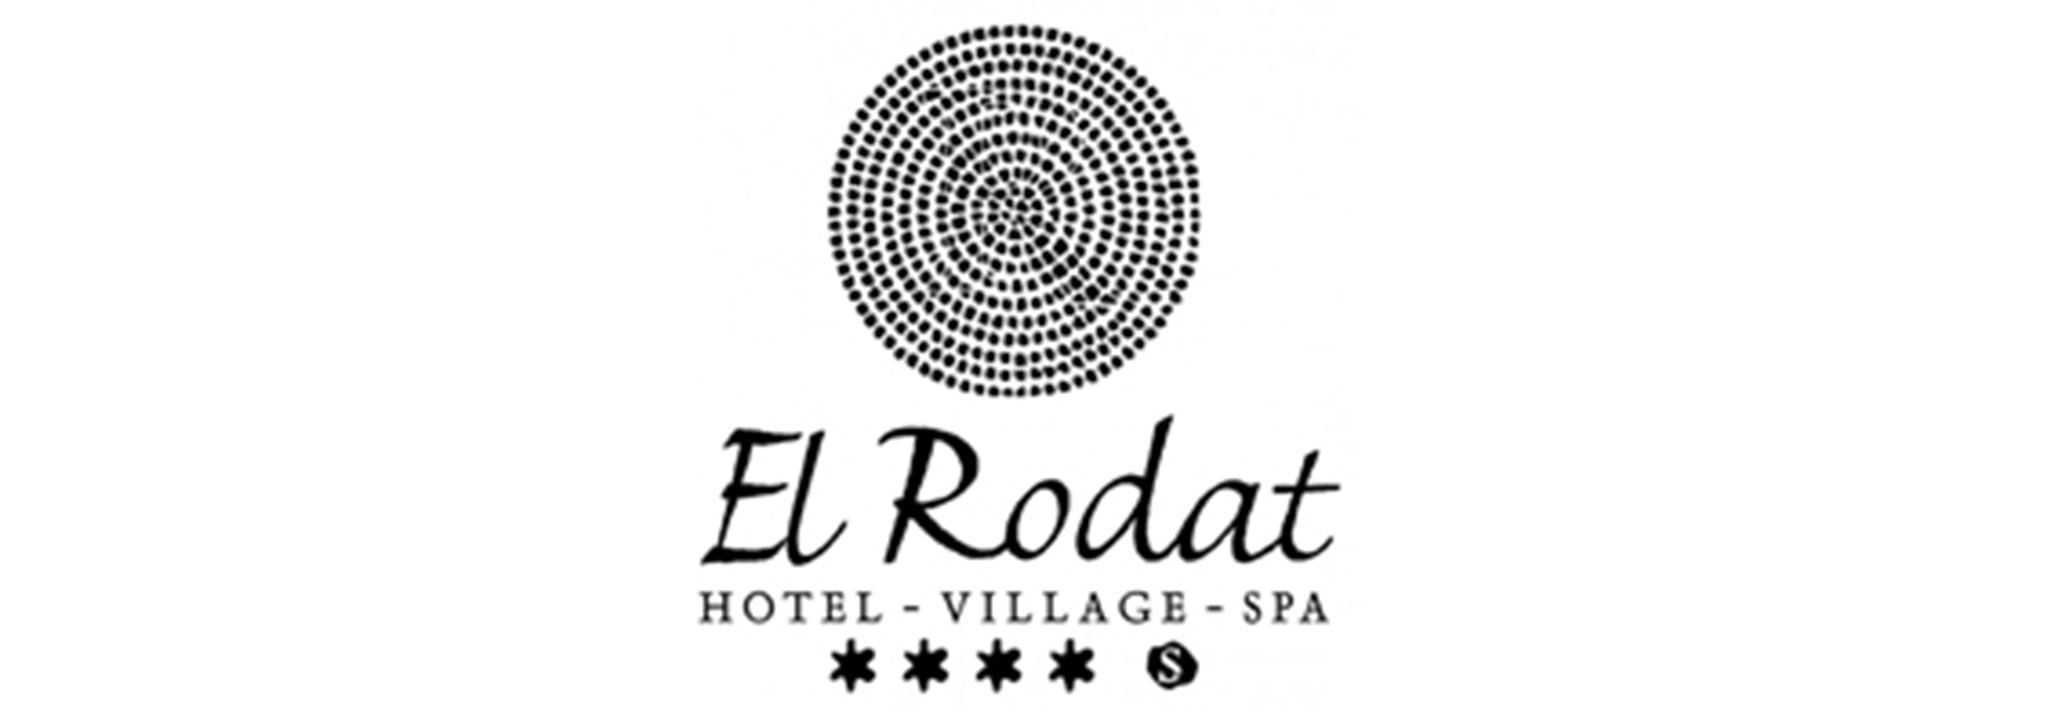 Logotipo de Hotel El Rodat